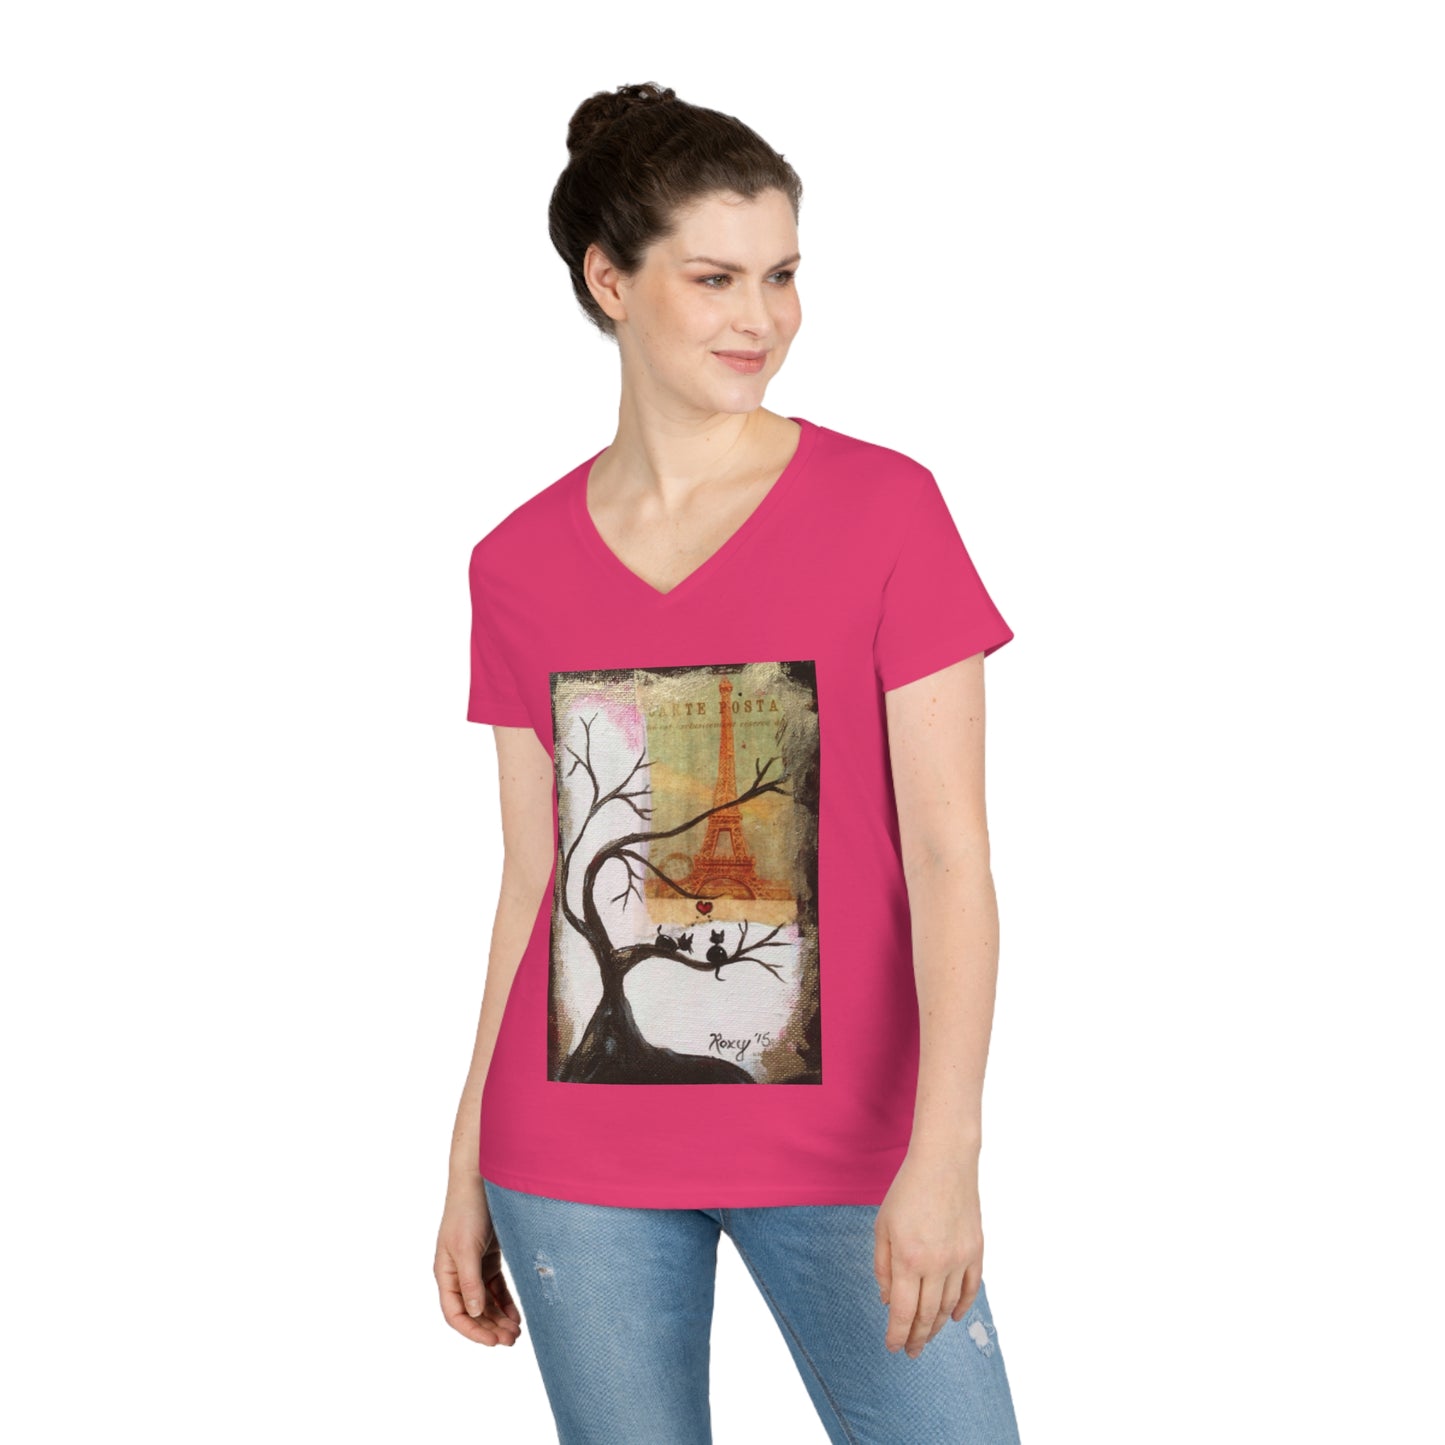 Even Cats Love Paris! Ladies' V-Neck T-Shirt